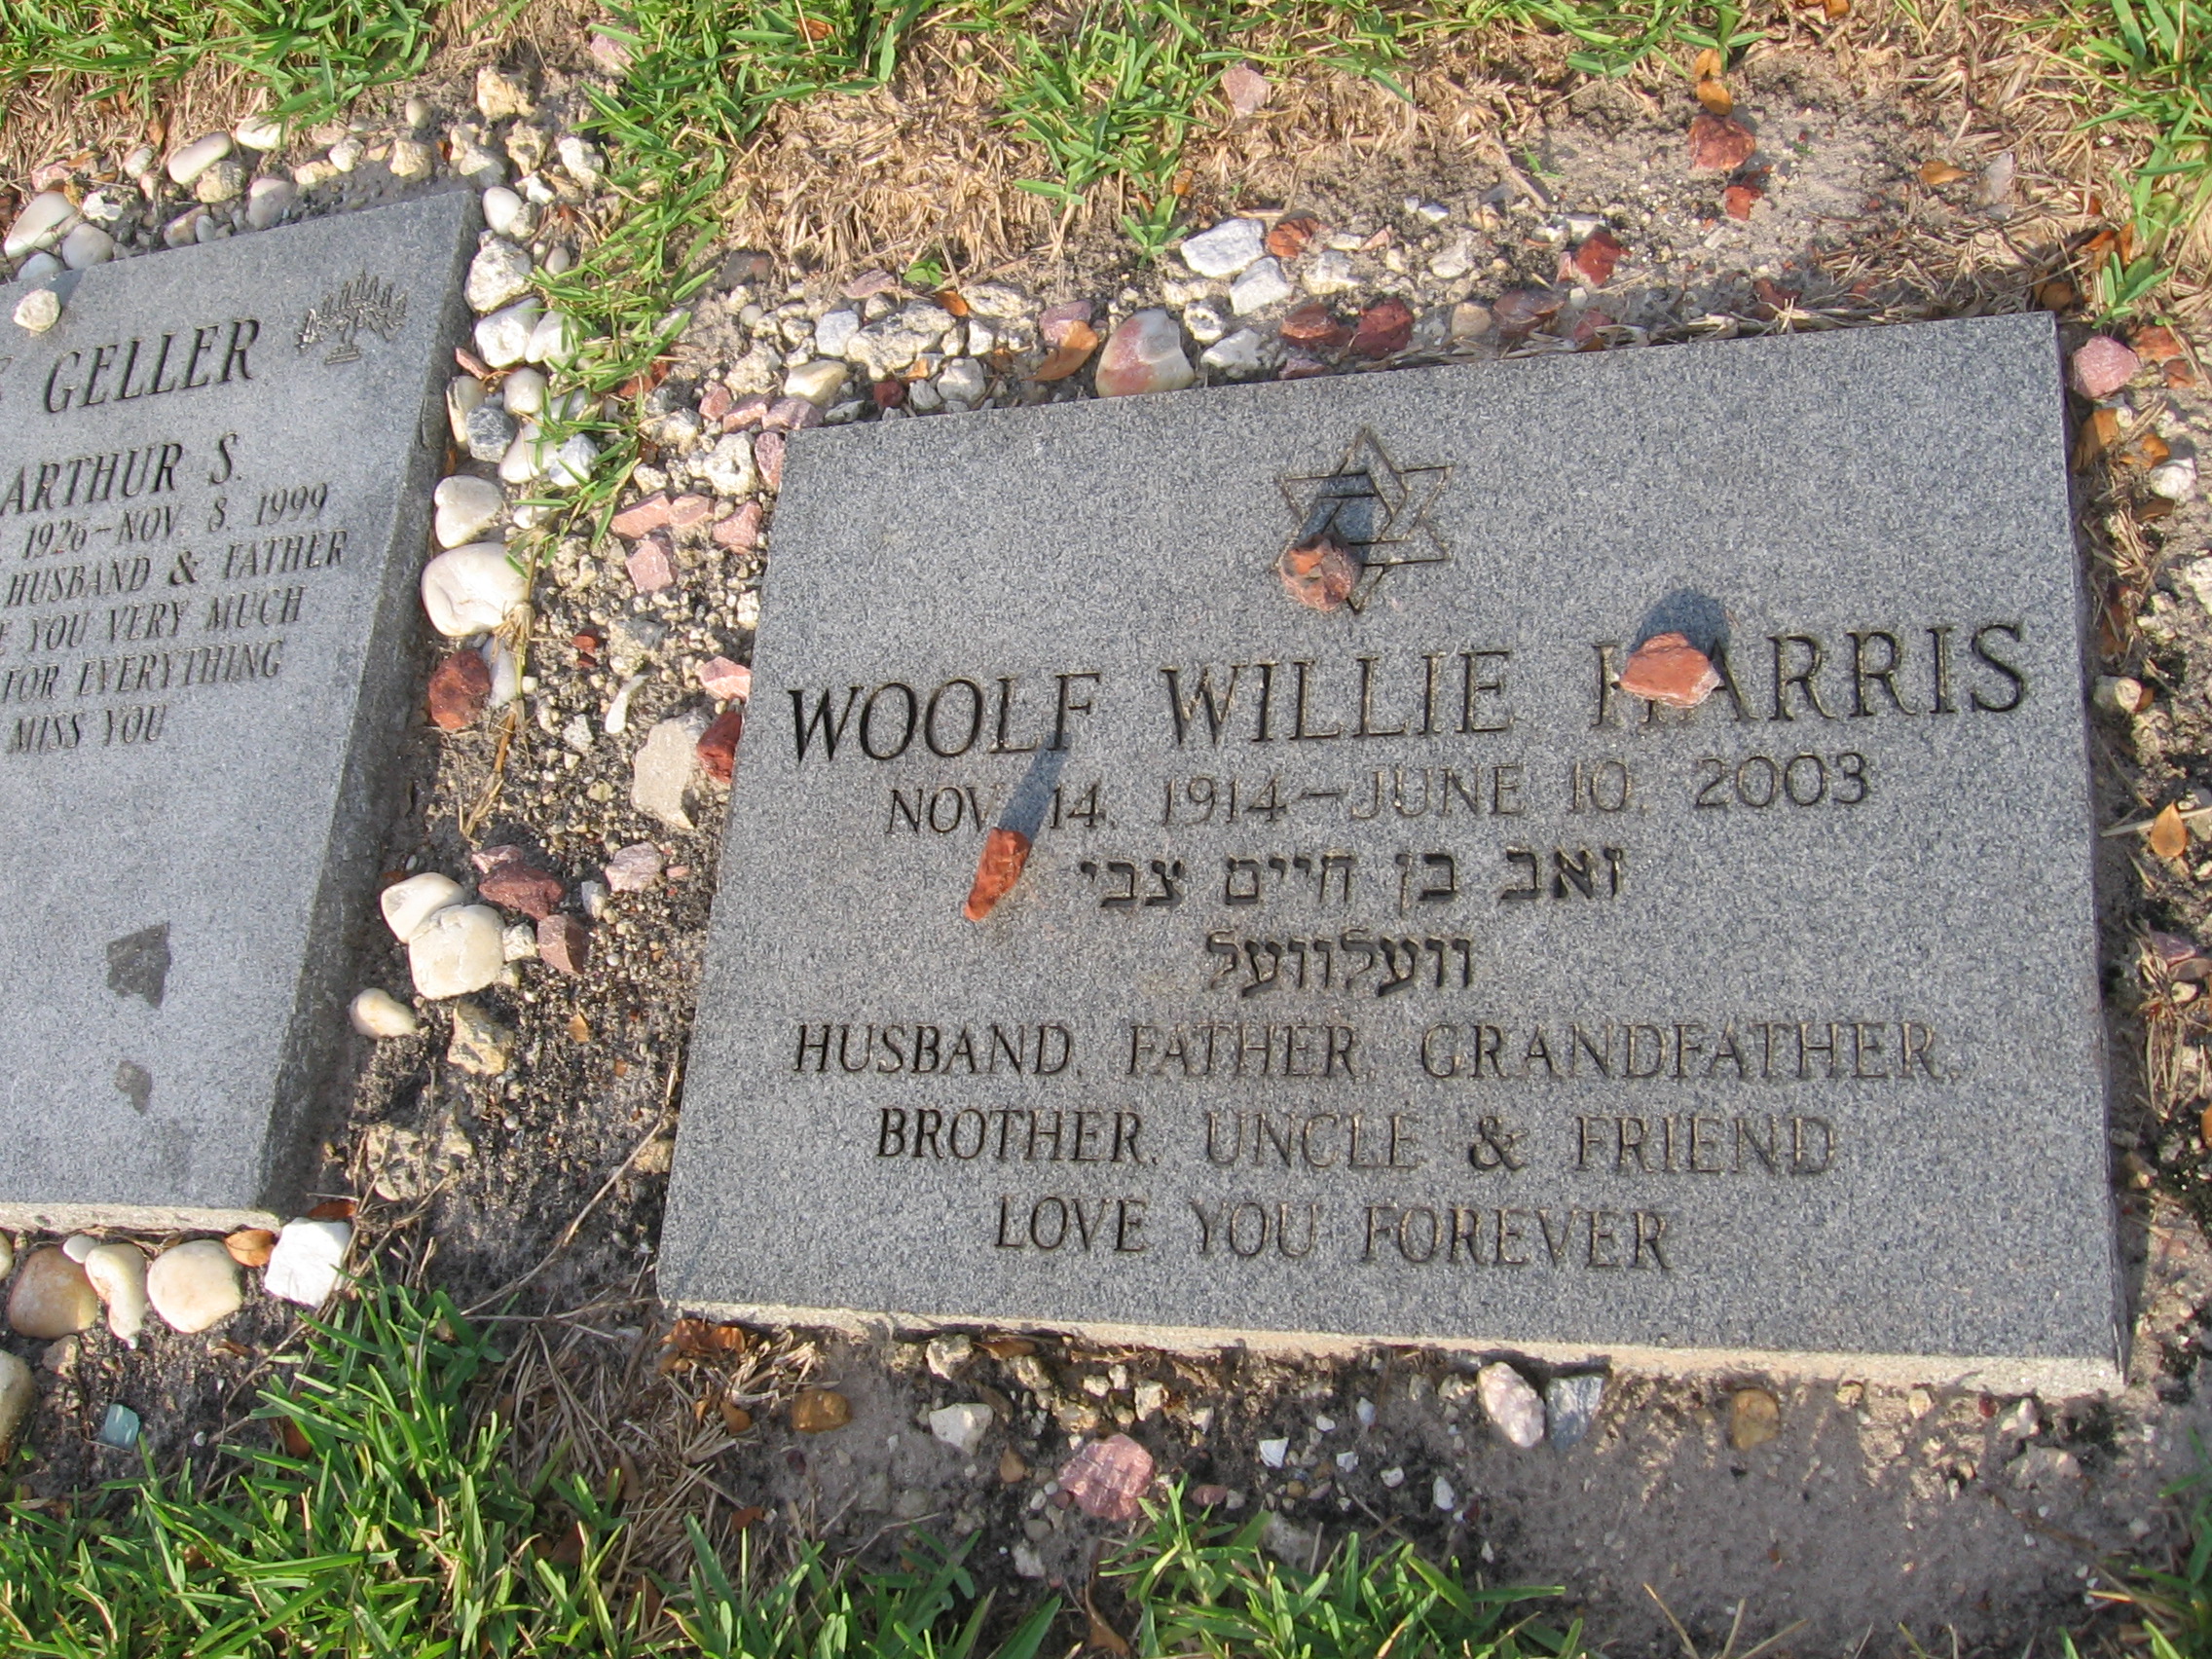 Woolf Willie Harris